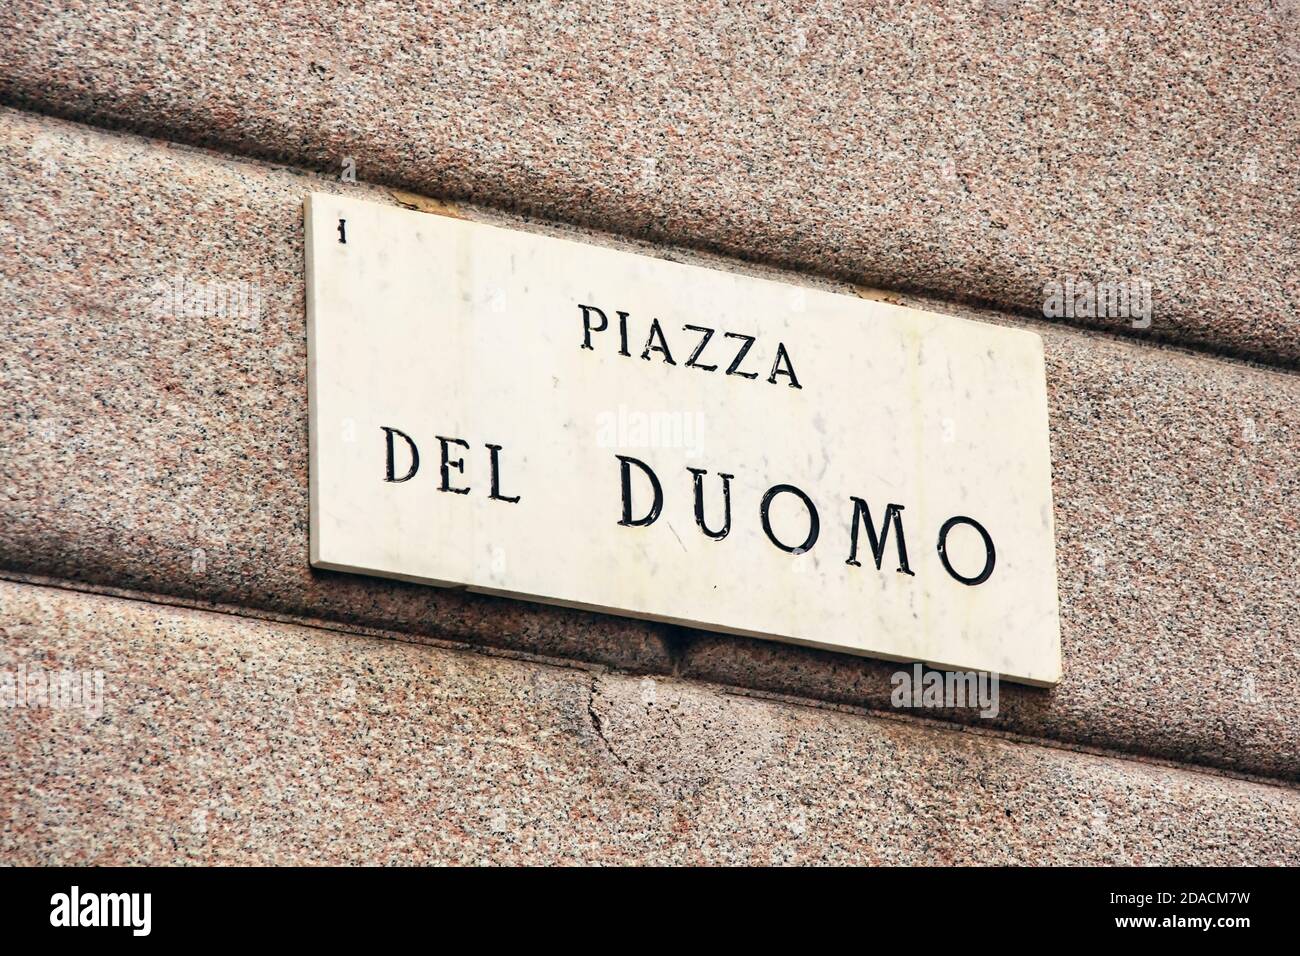 Letrero de mármol en italiano de la plaza mundialmente famosa Piazza del Duomo. Milán, Italia Foto de stock